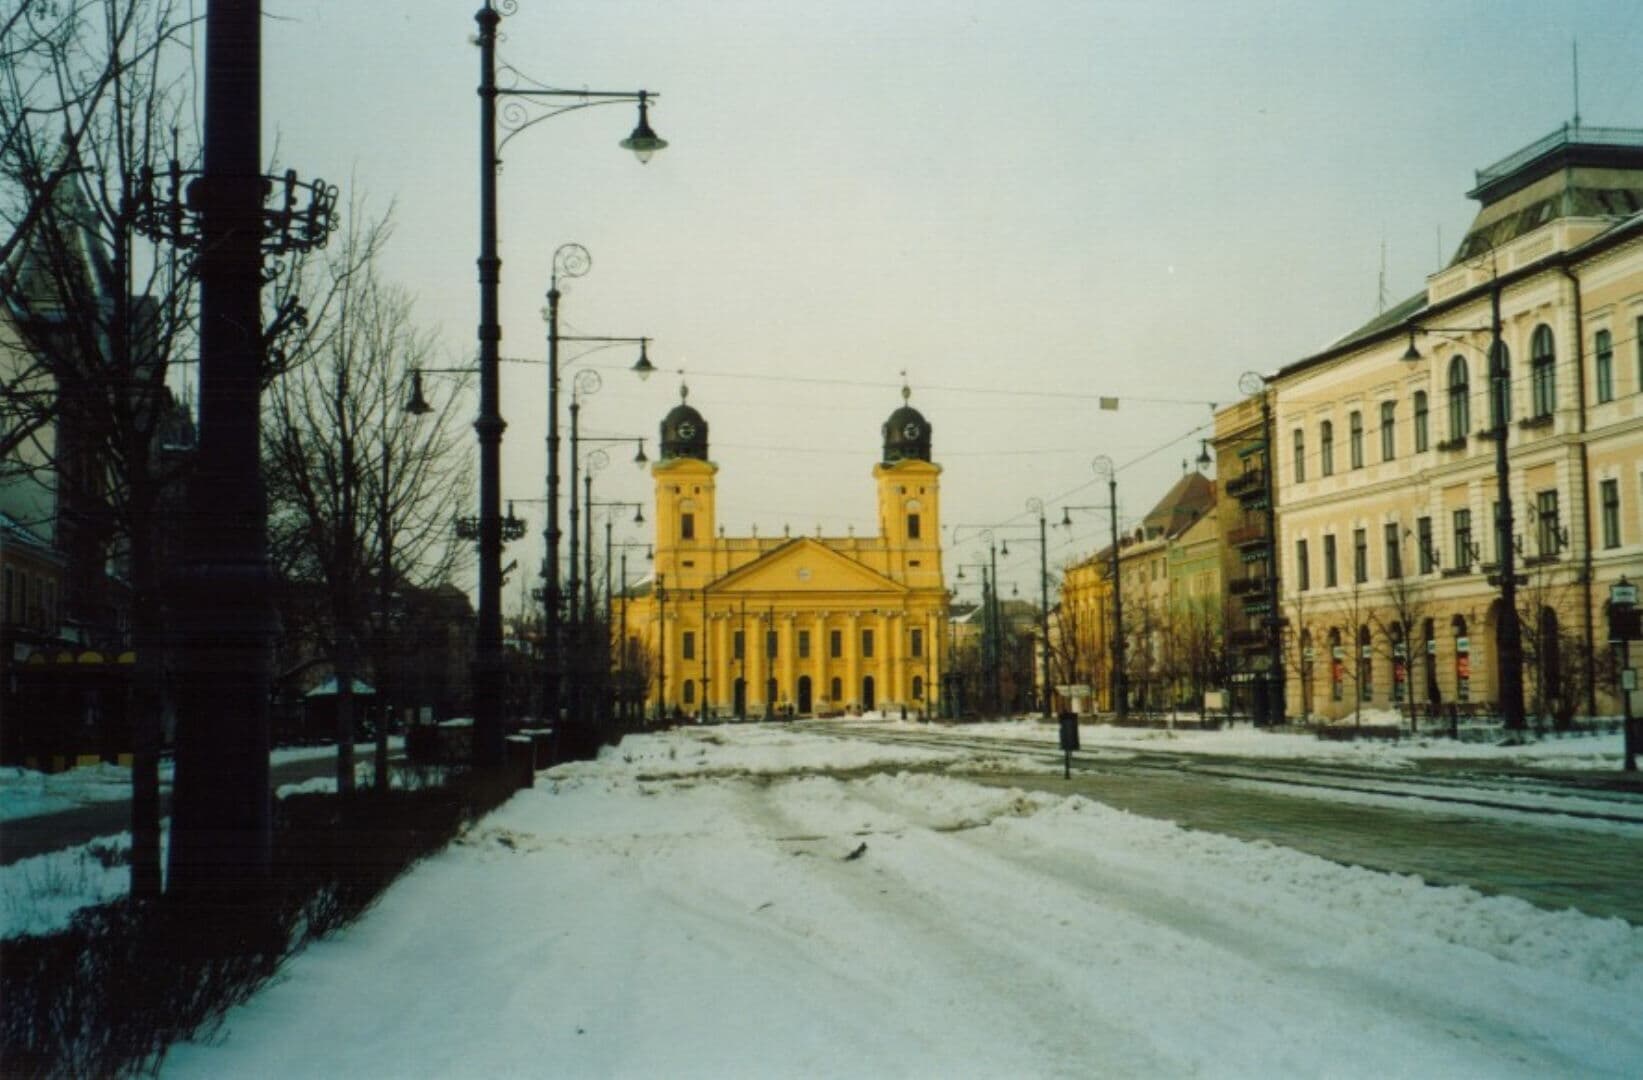 Debrecen photo